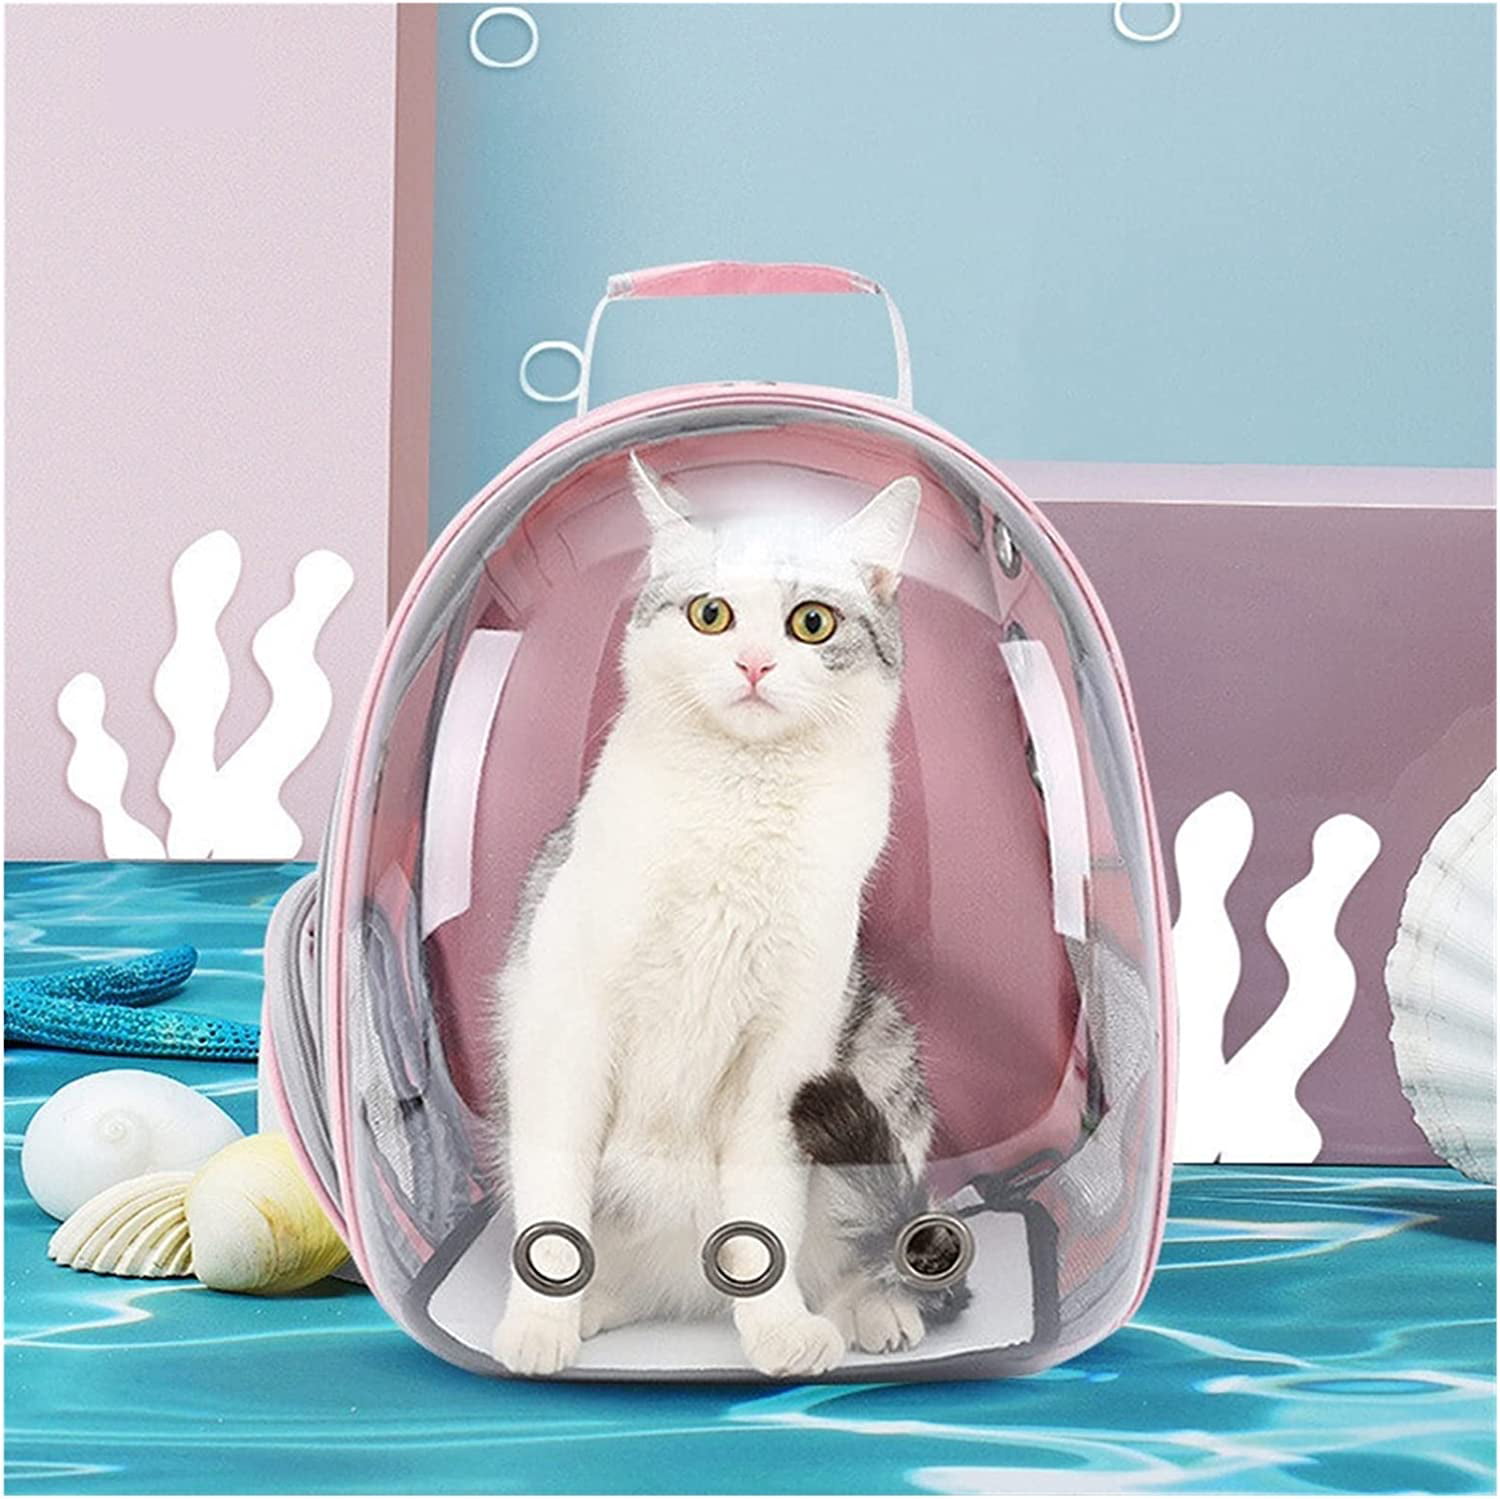 Cat Backpack Carrier Bubble Bag, Transparent Space Capsule Pet